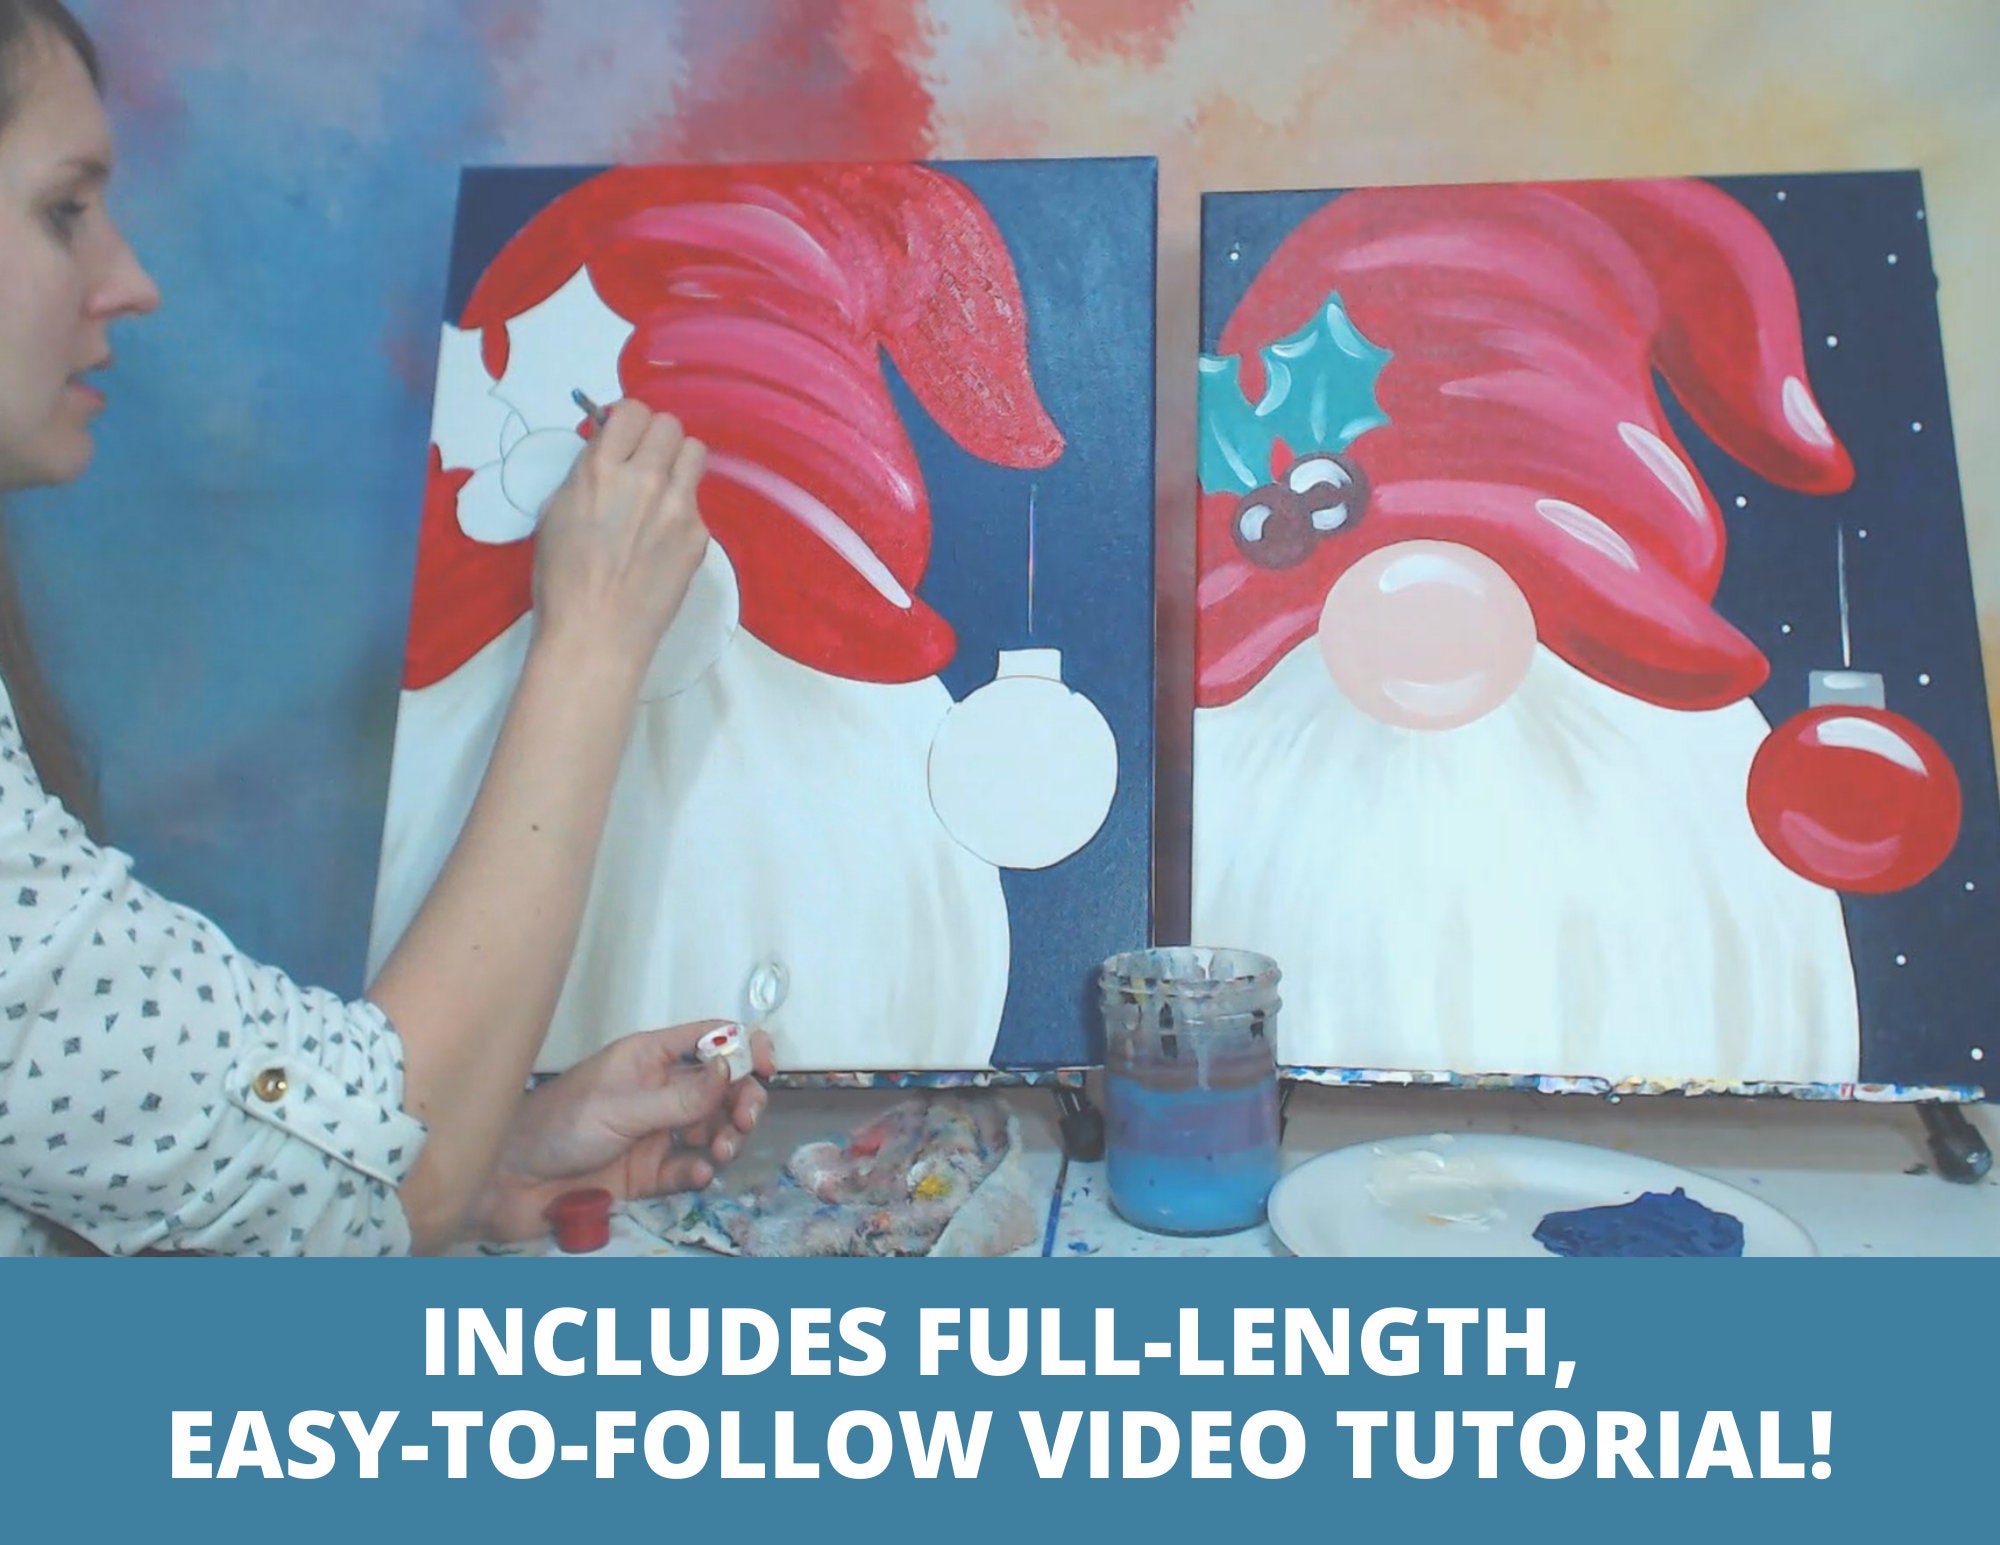 Santa Gnome Canvas Paint Kit – Clayopatra Arts Online